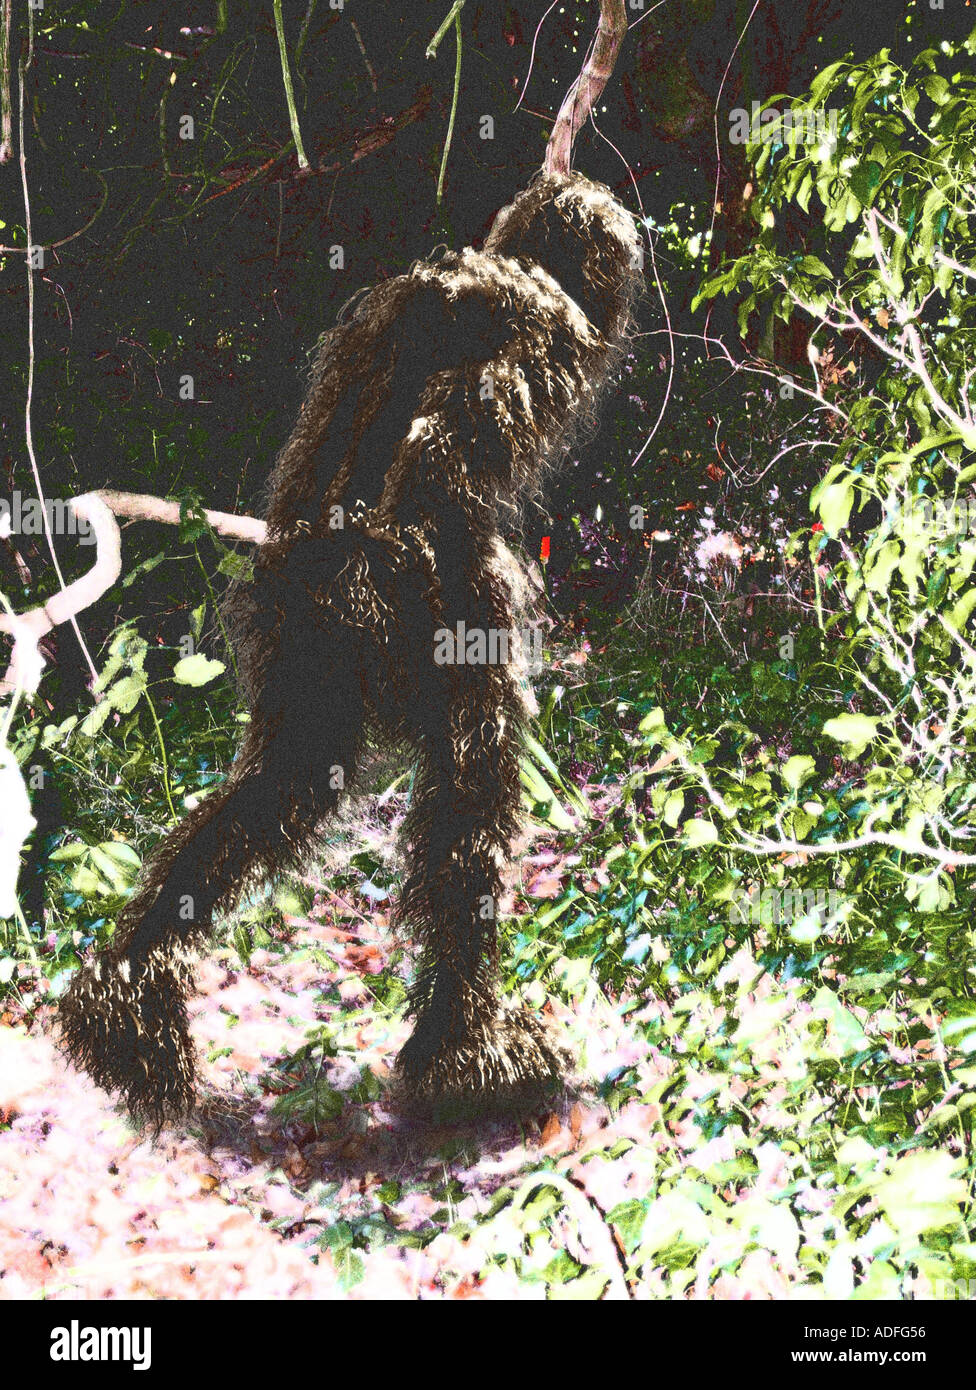 gefälschte Fotos von Bigfoot Sasquatch oder Yeti Computer Illustration kein echtes Foto Stockfoto